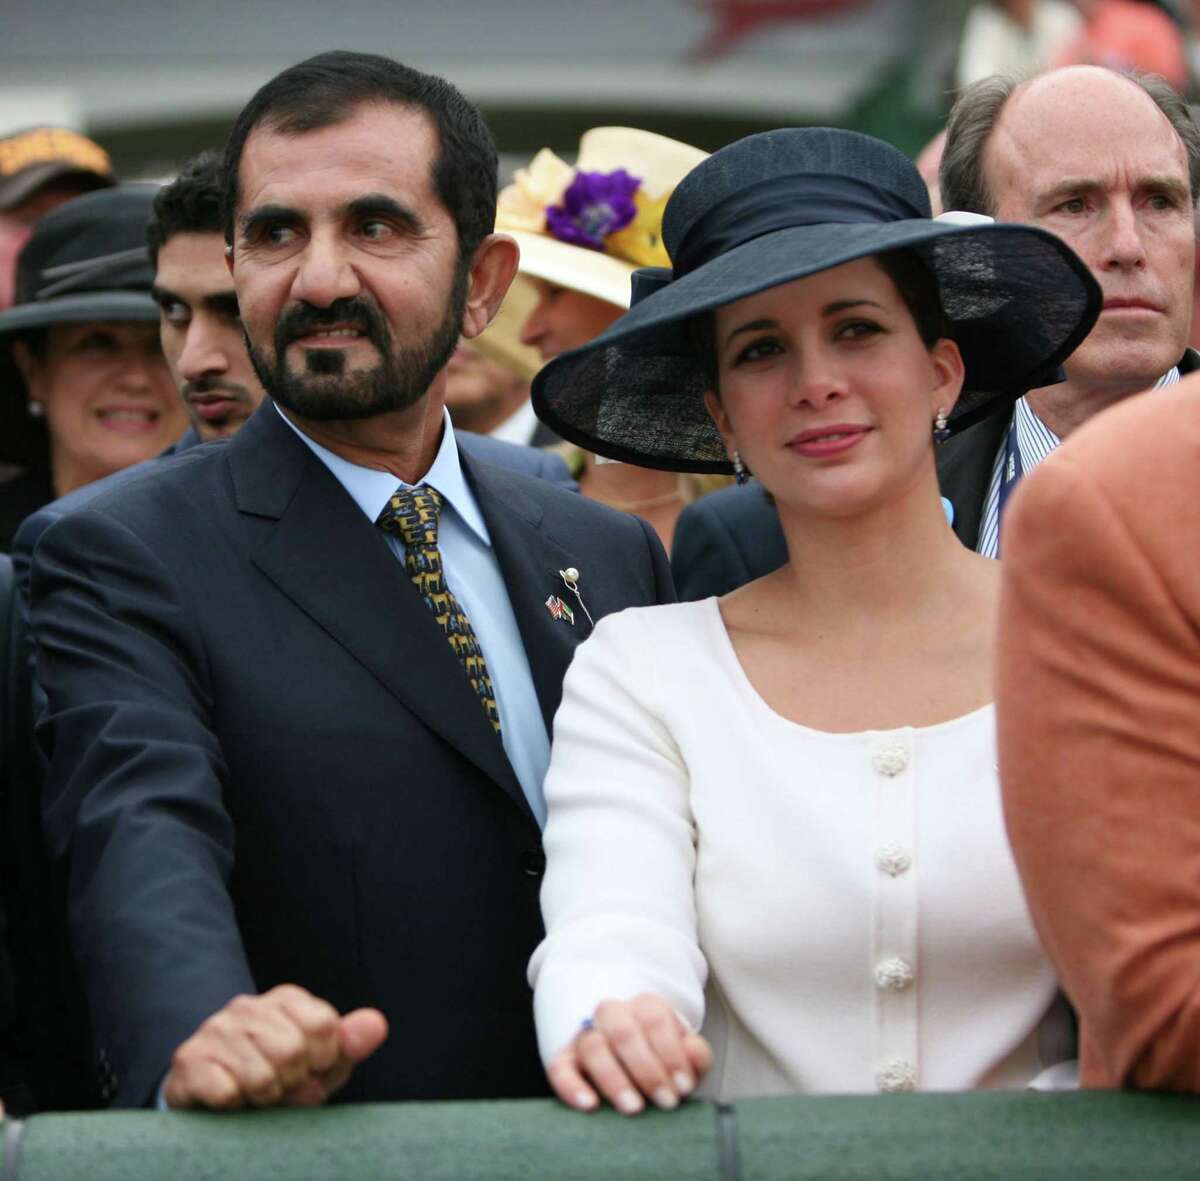 Dubai’s ruler, estranged wife headed for court clash in UK